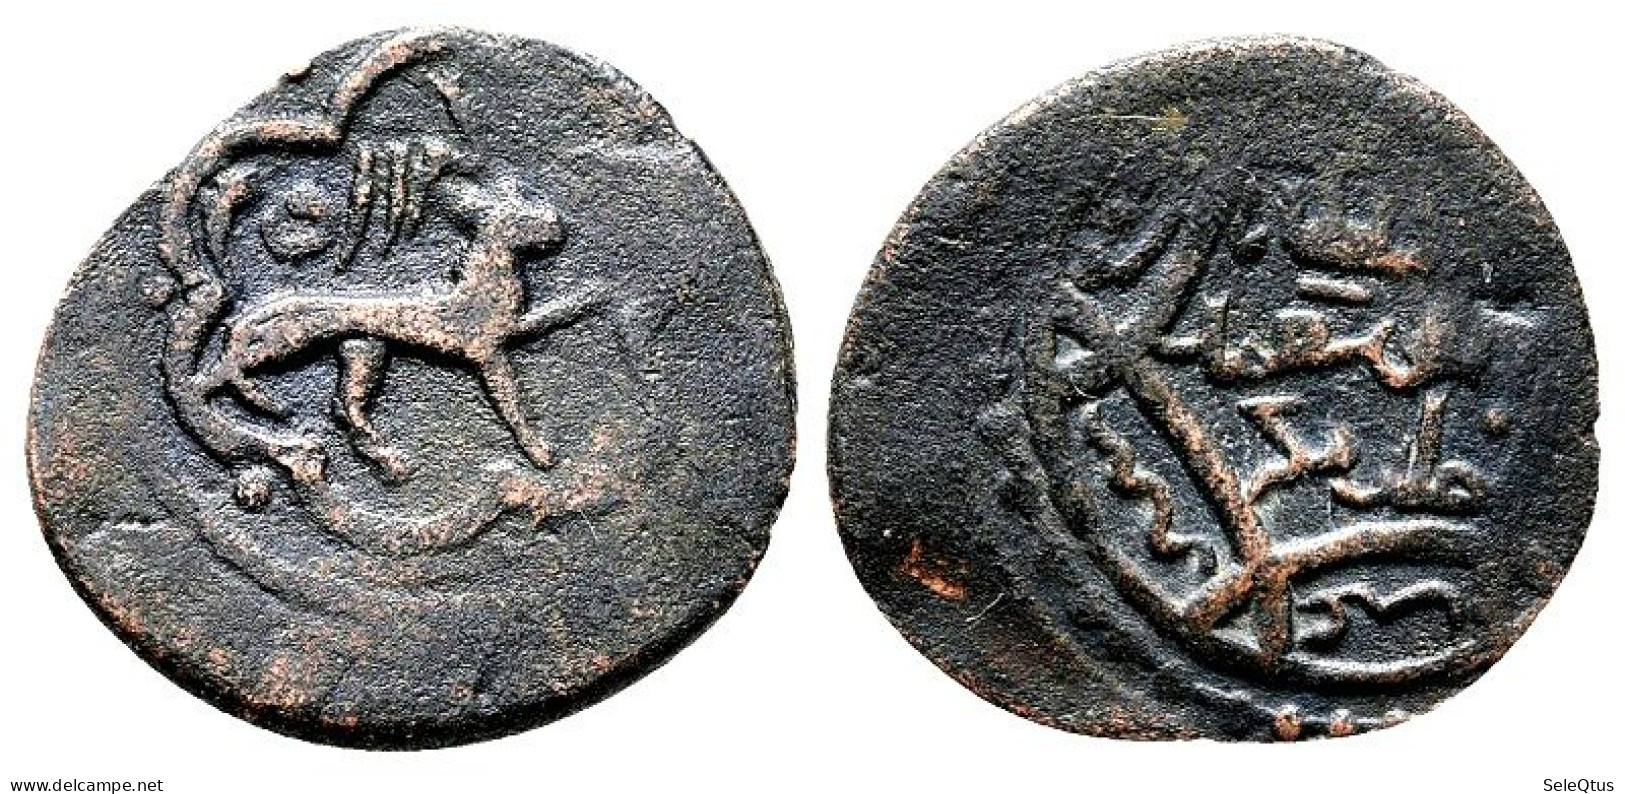 Monedas Antiguas - Ancient Coins (00133-008-0847) - Islamische Münzen